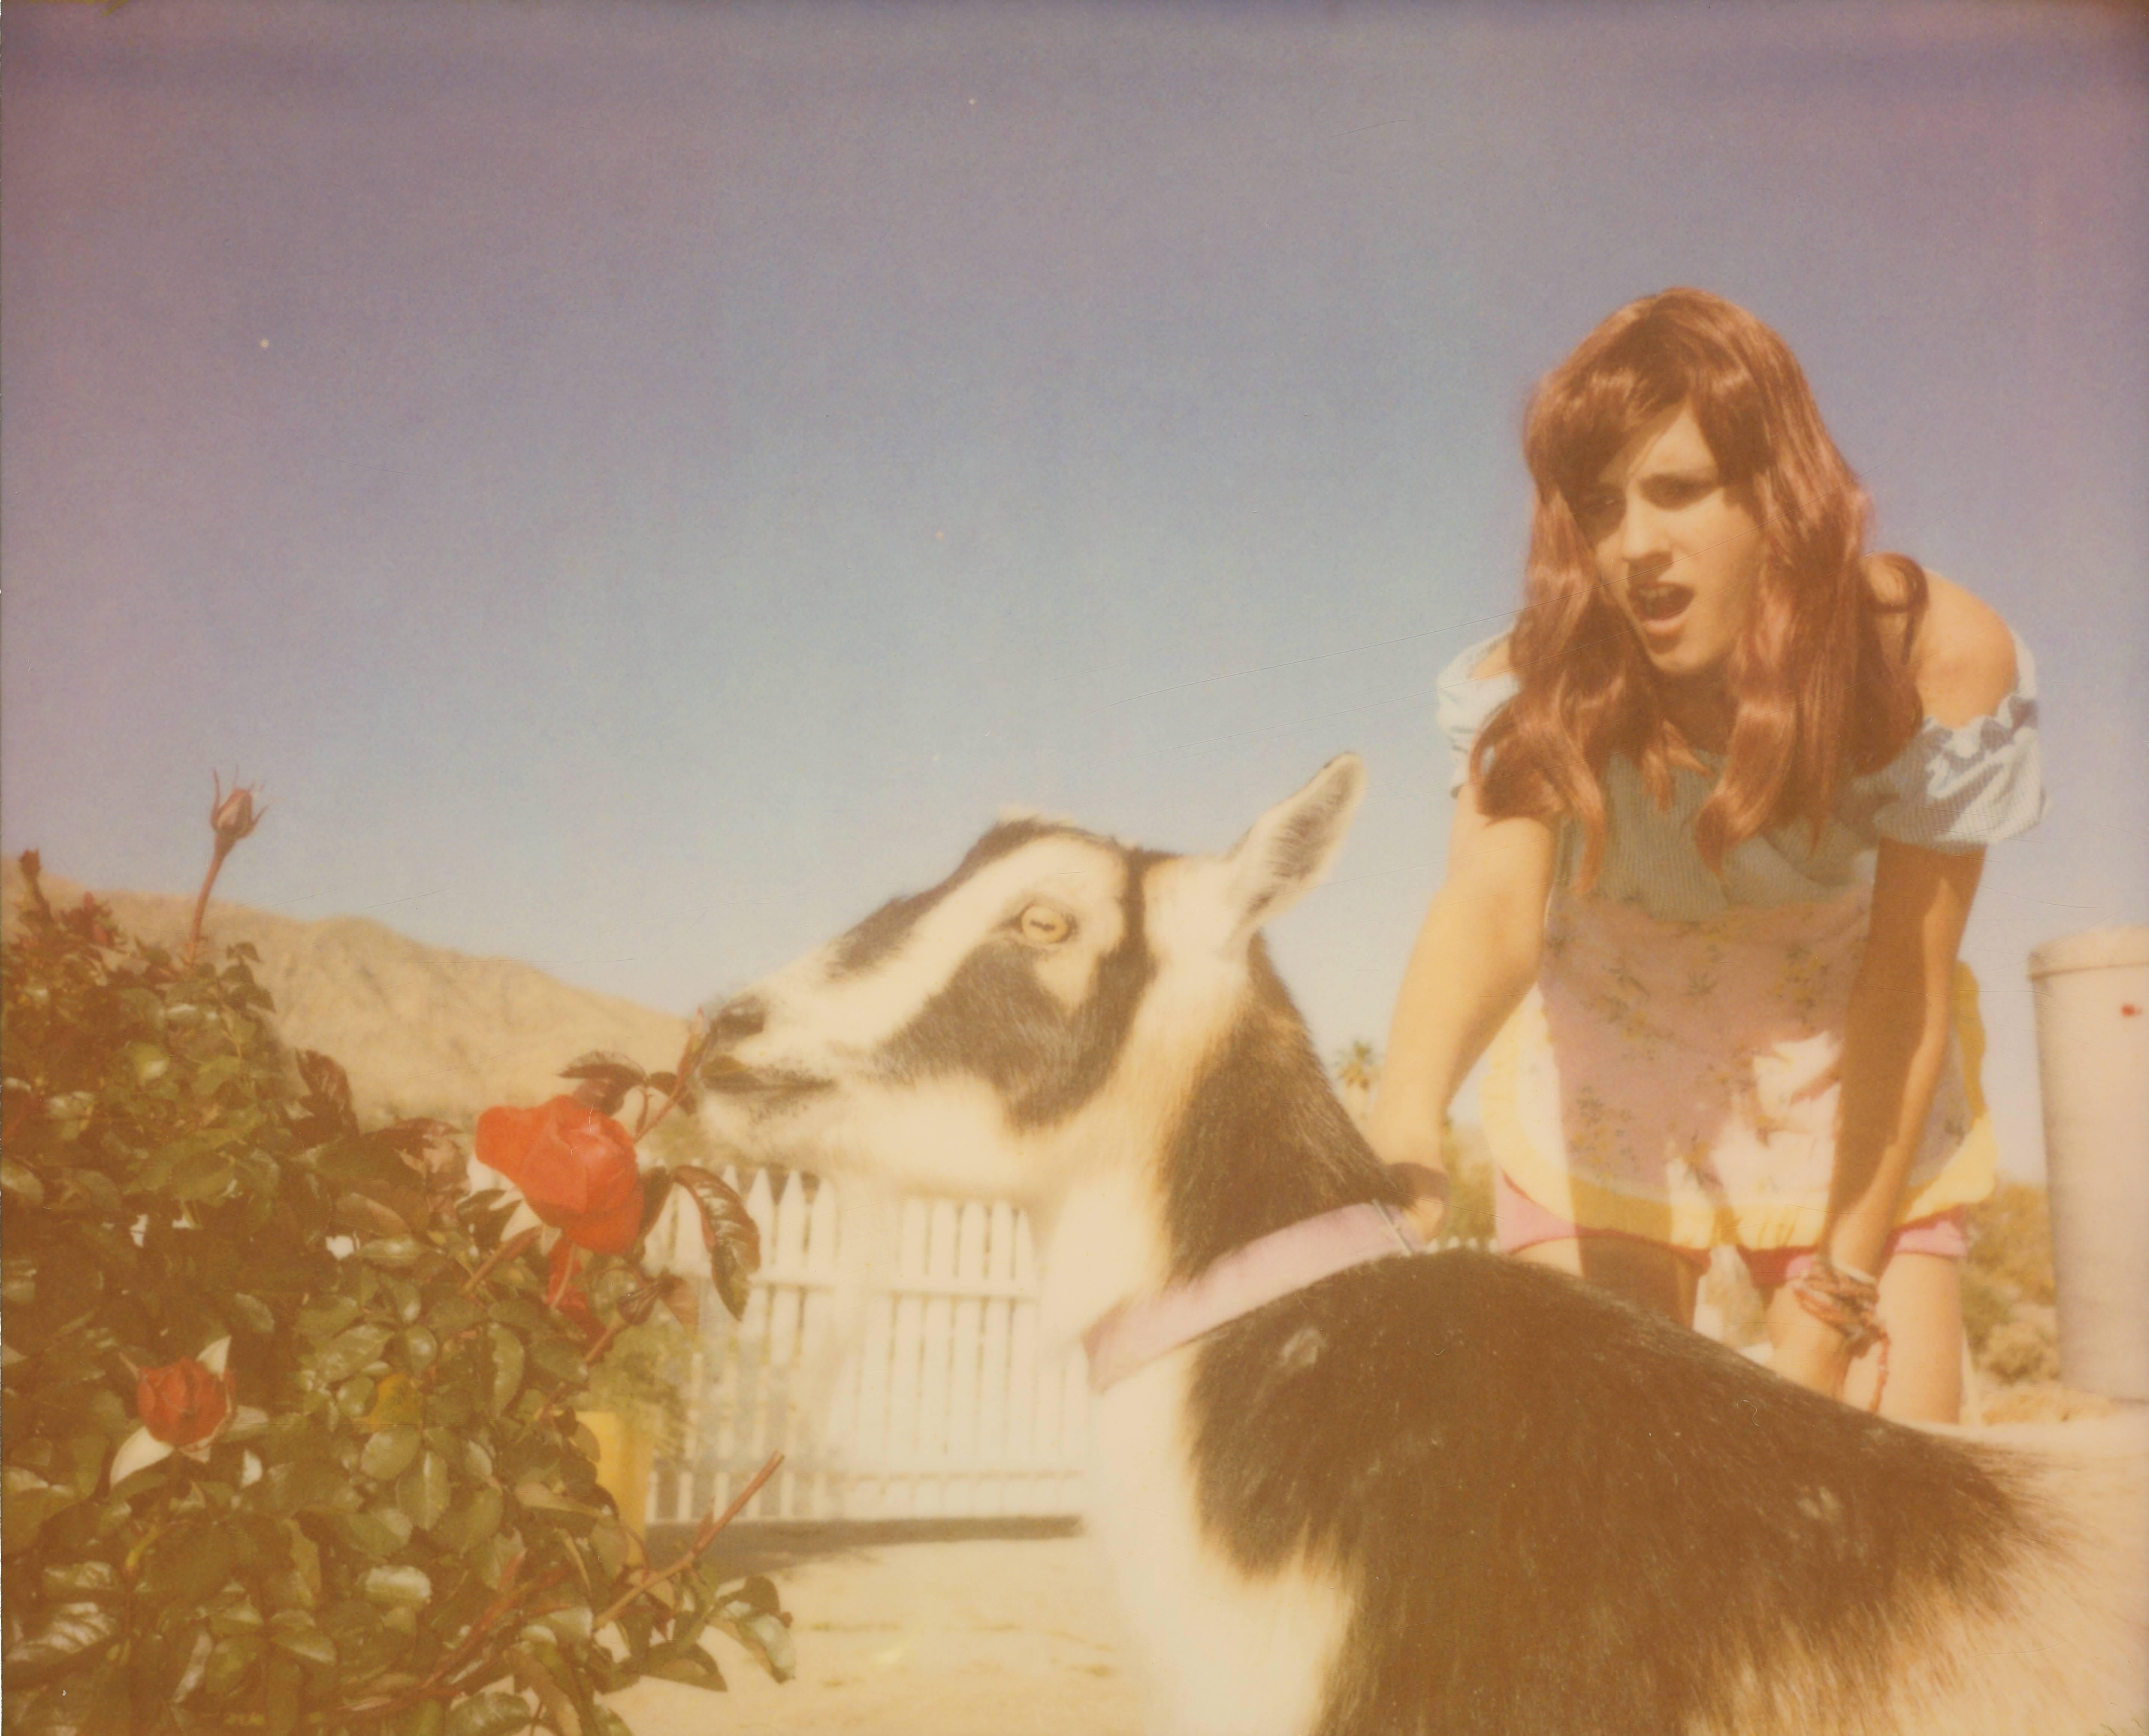 Stefanie Schneider Portrait Photograph - Heather and Zeuss the Goat featuring Heather Megan Christie